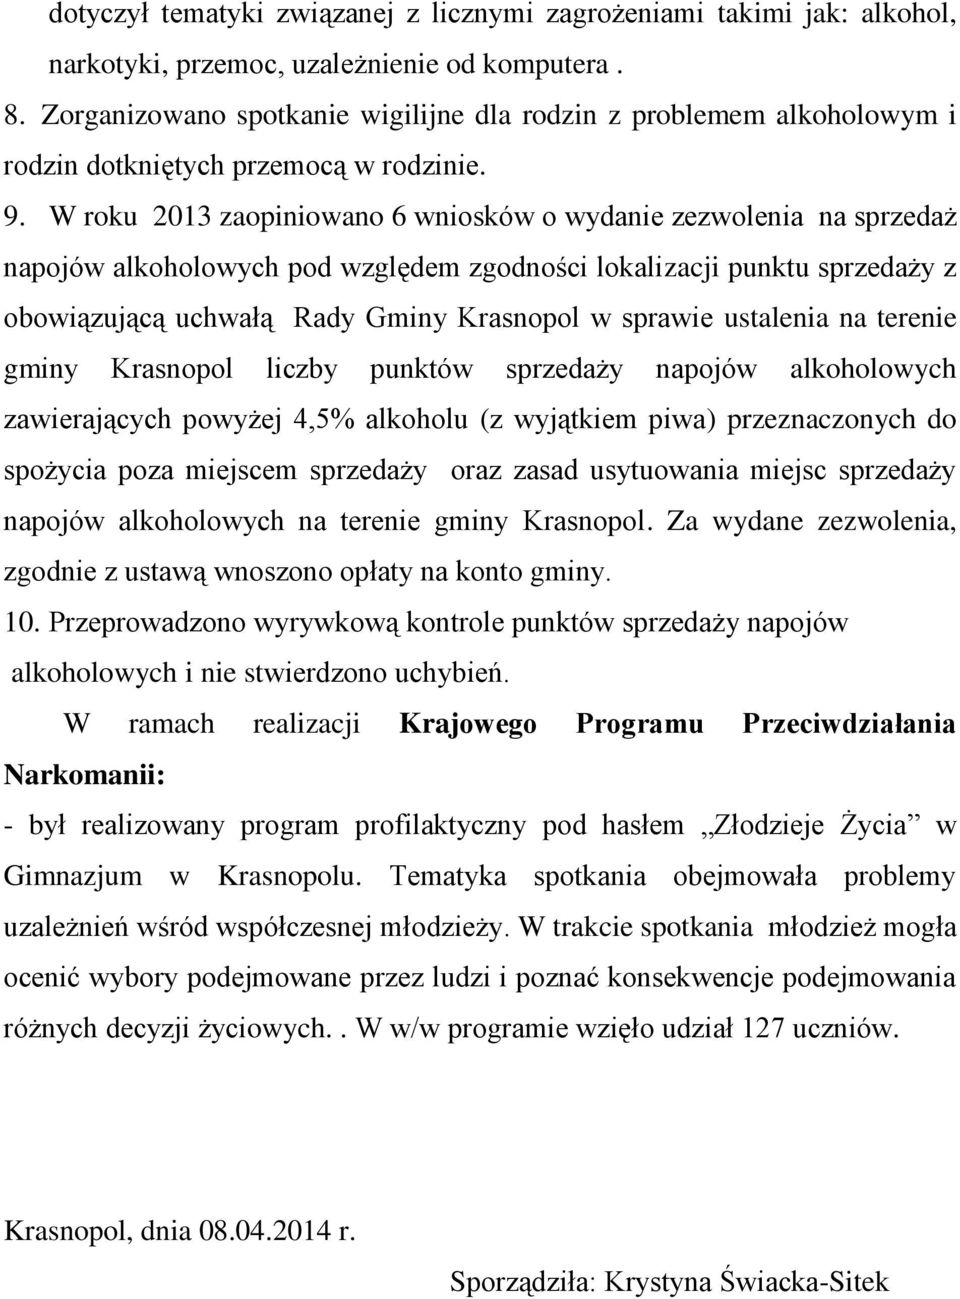 W roku 2013 zaopiniowano 6 wniosków o wydanie zezwolenia na sprzedaż napojów alkoholowych pod względem zgodności lokalizacji punktu sprzedaży z obowiązującą uchwałą Rady Gminy Krasnopol w sprawie